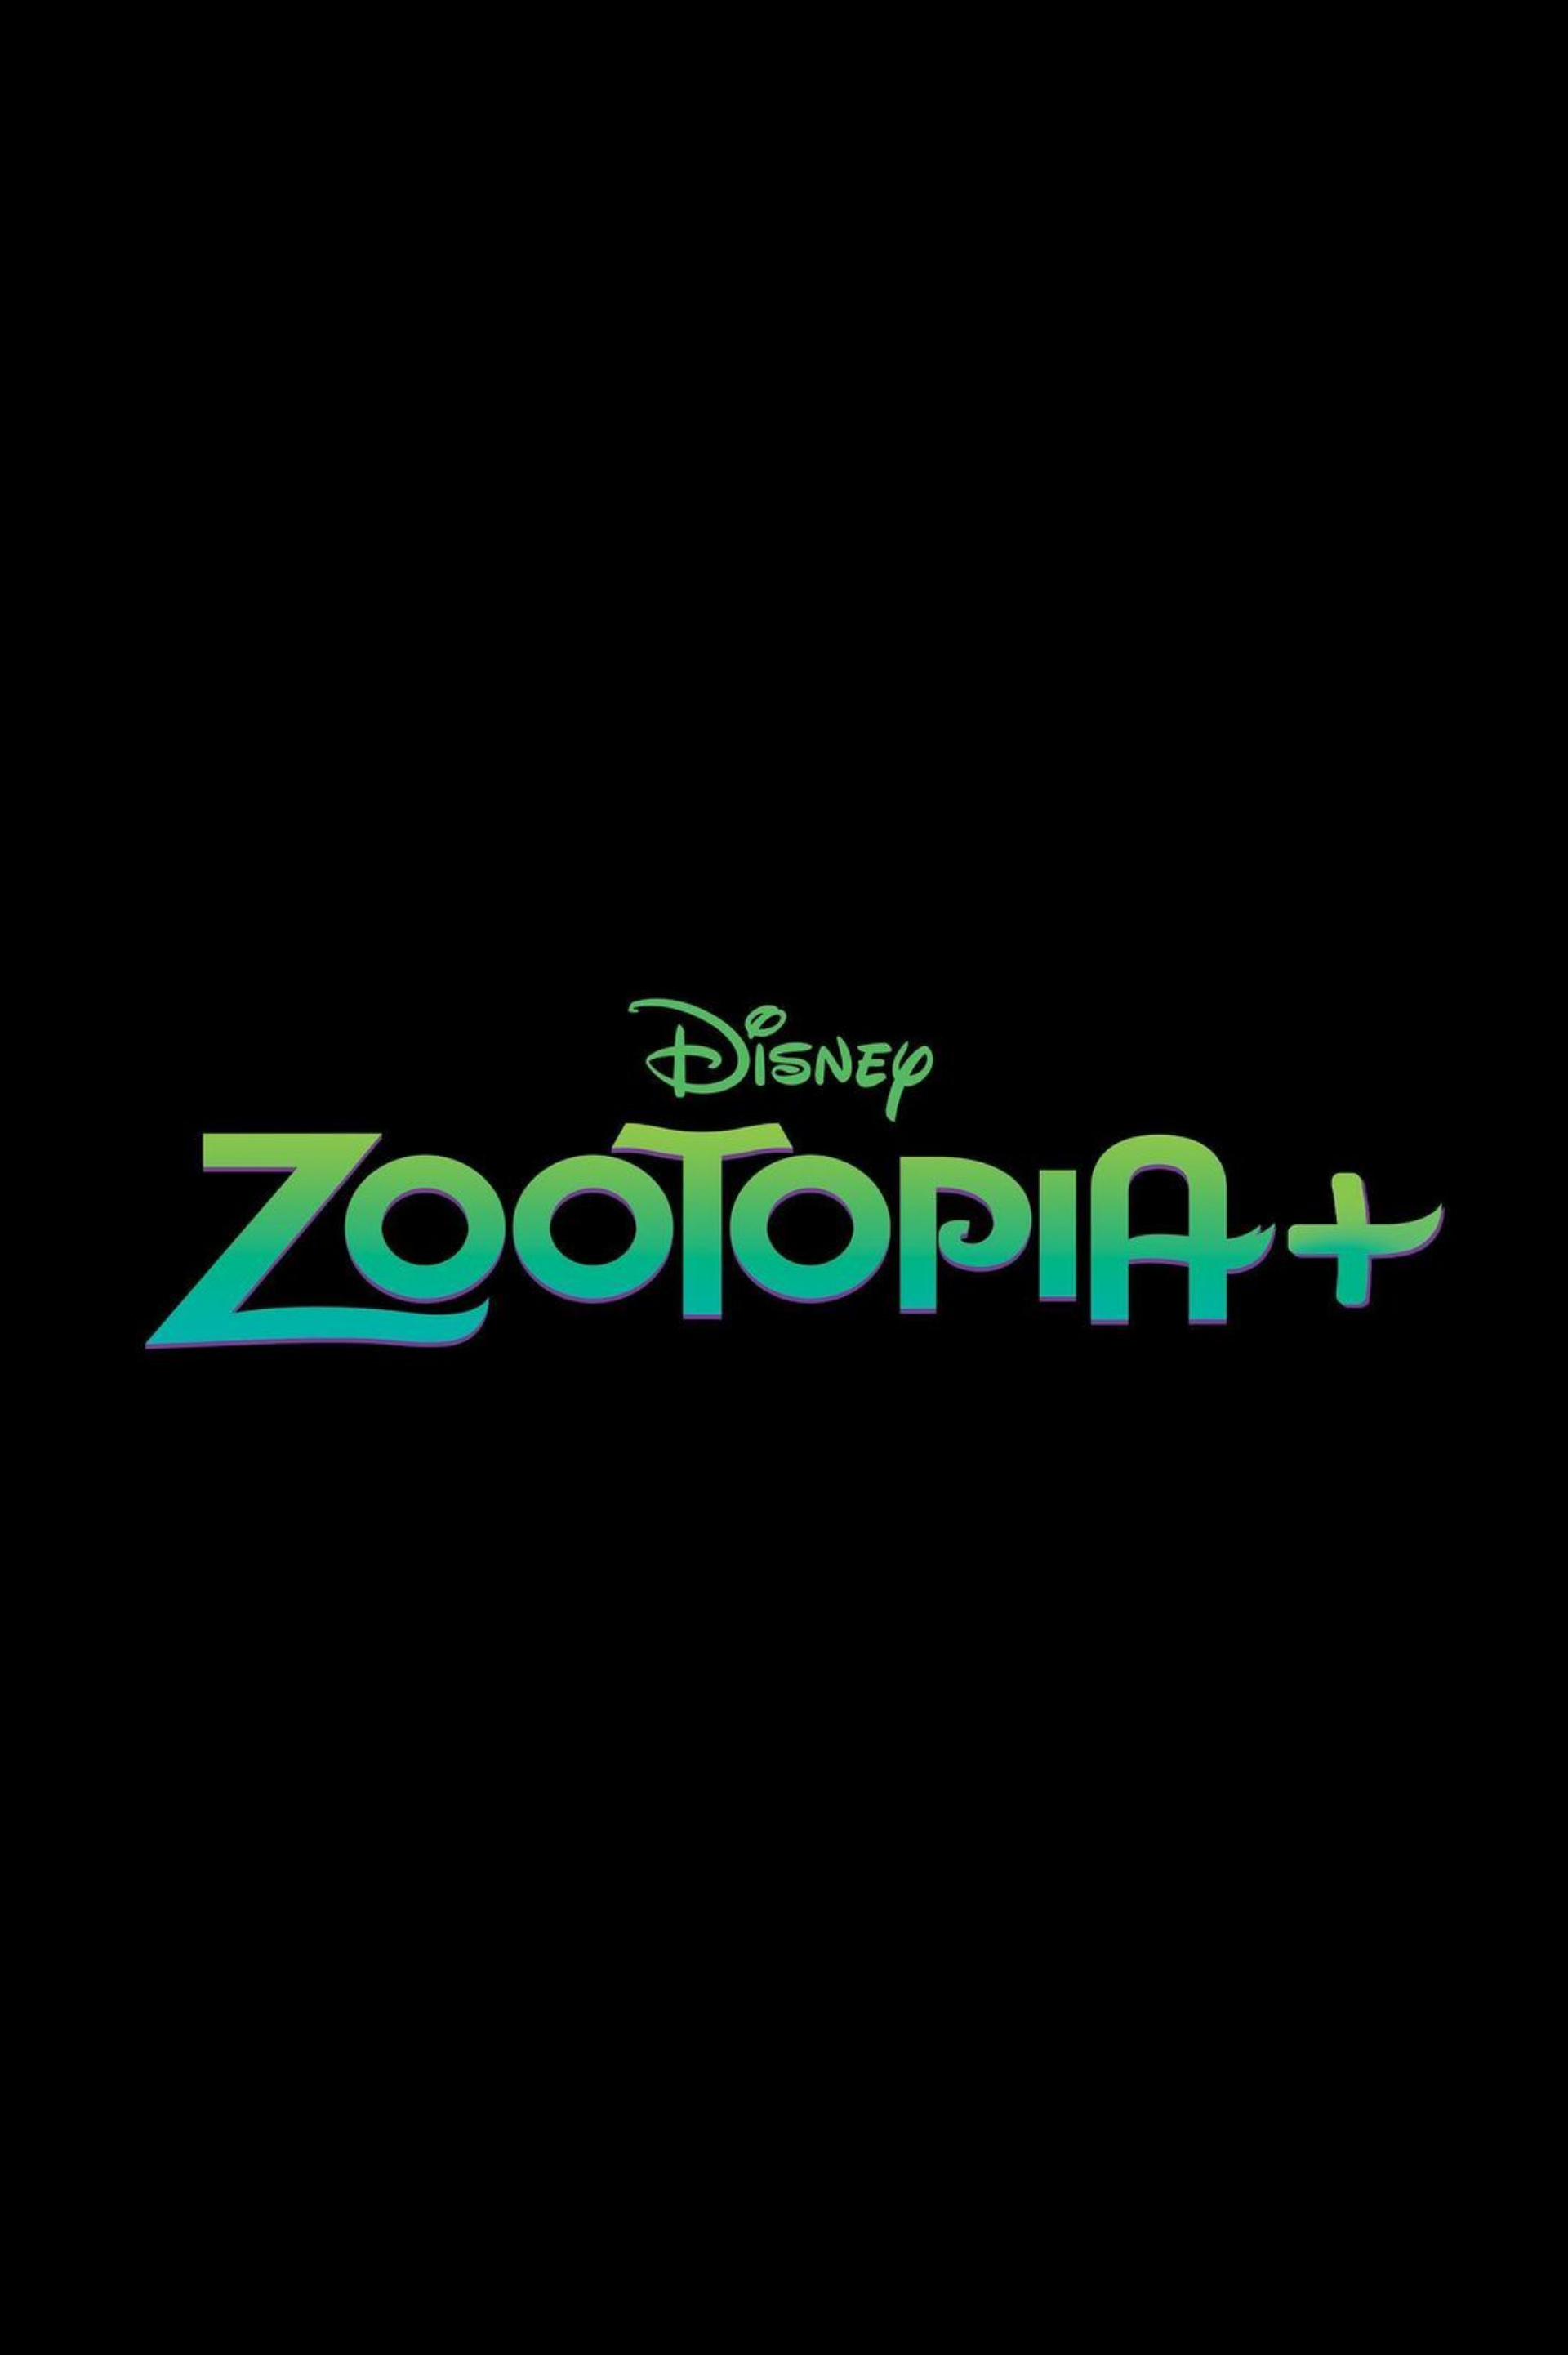 Zootopia+ Season 1 Episode 1